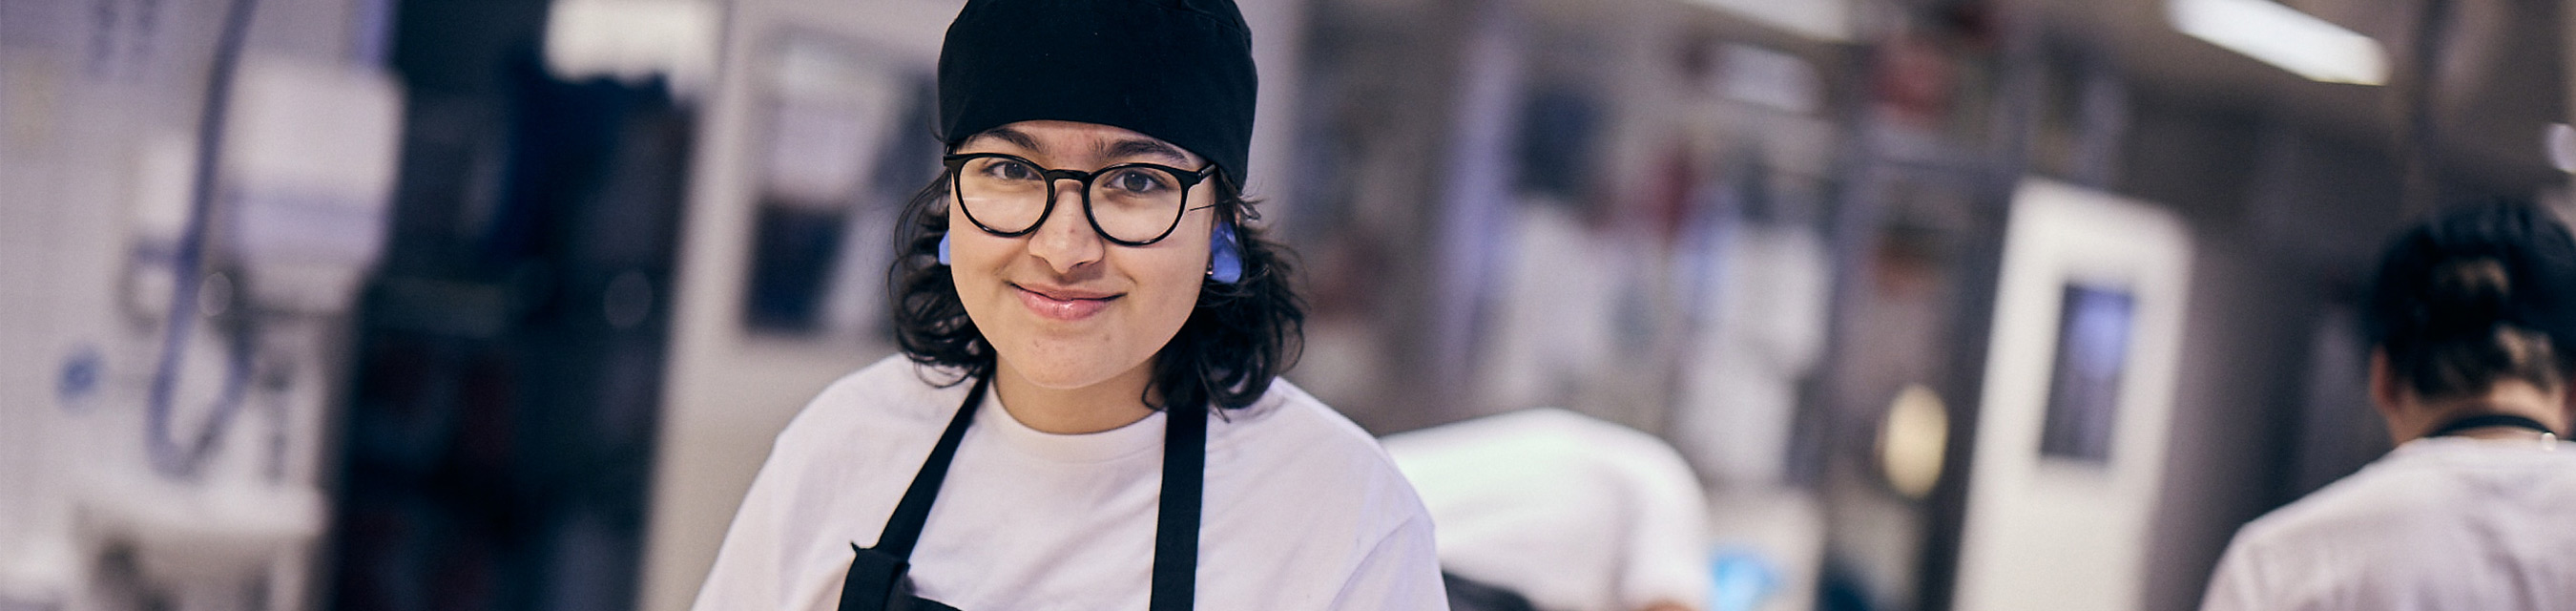 En leende elev med kockmössa,
glasögon och förkläde i bagerimiljö